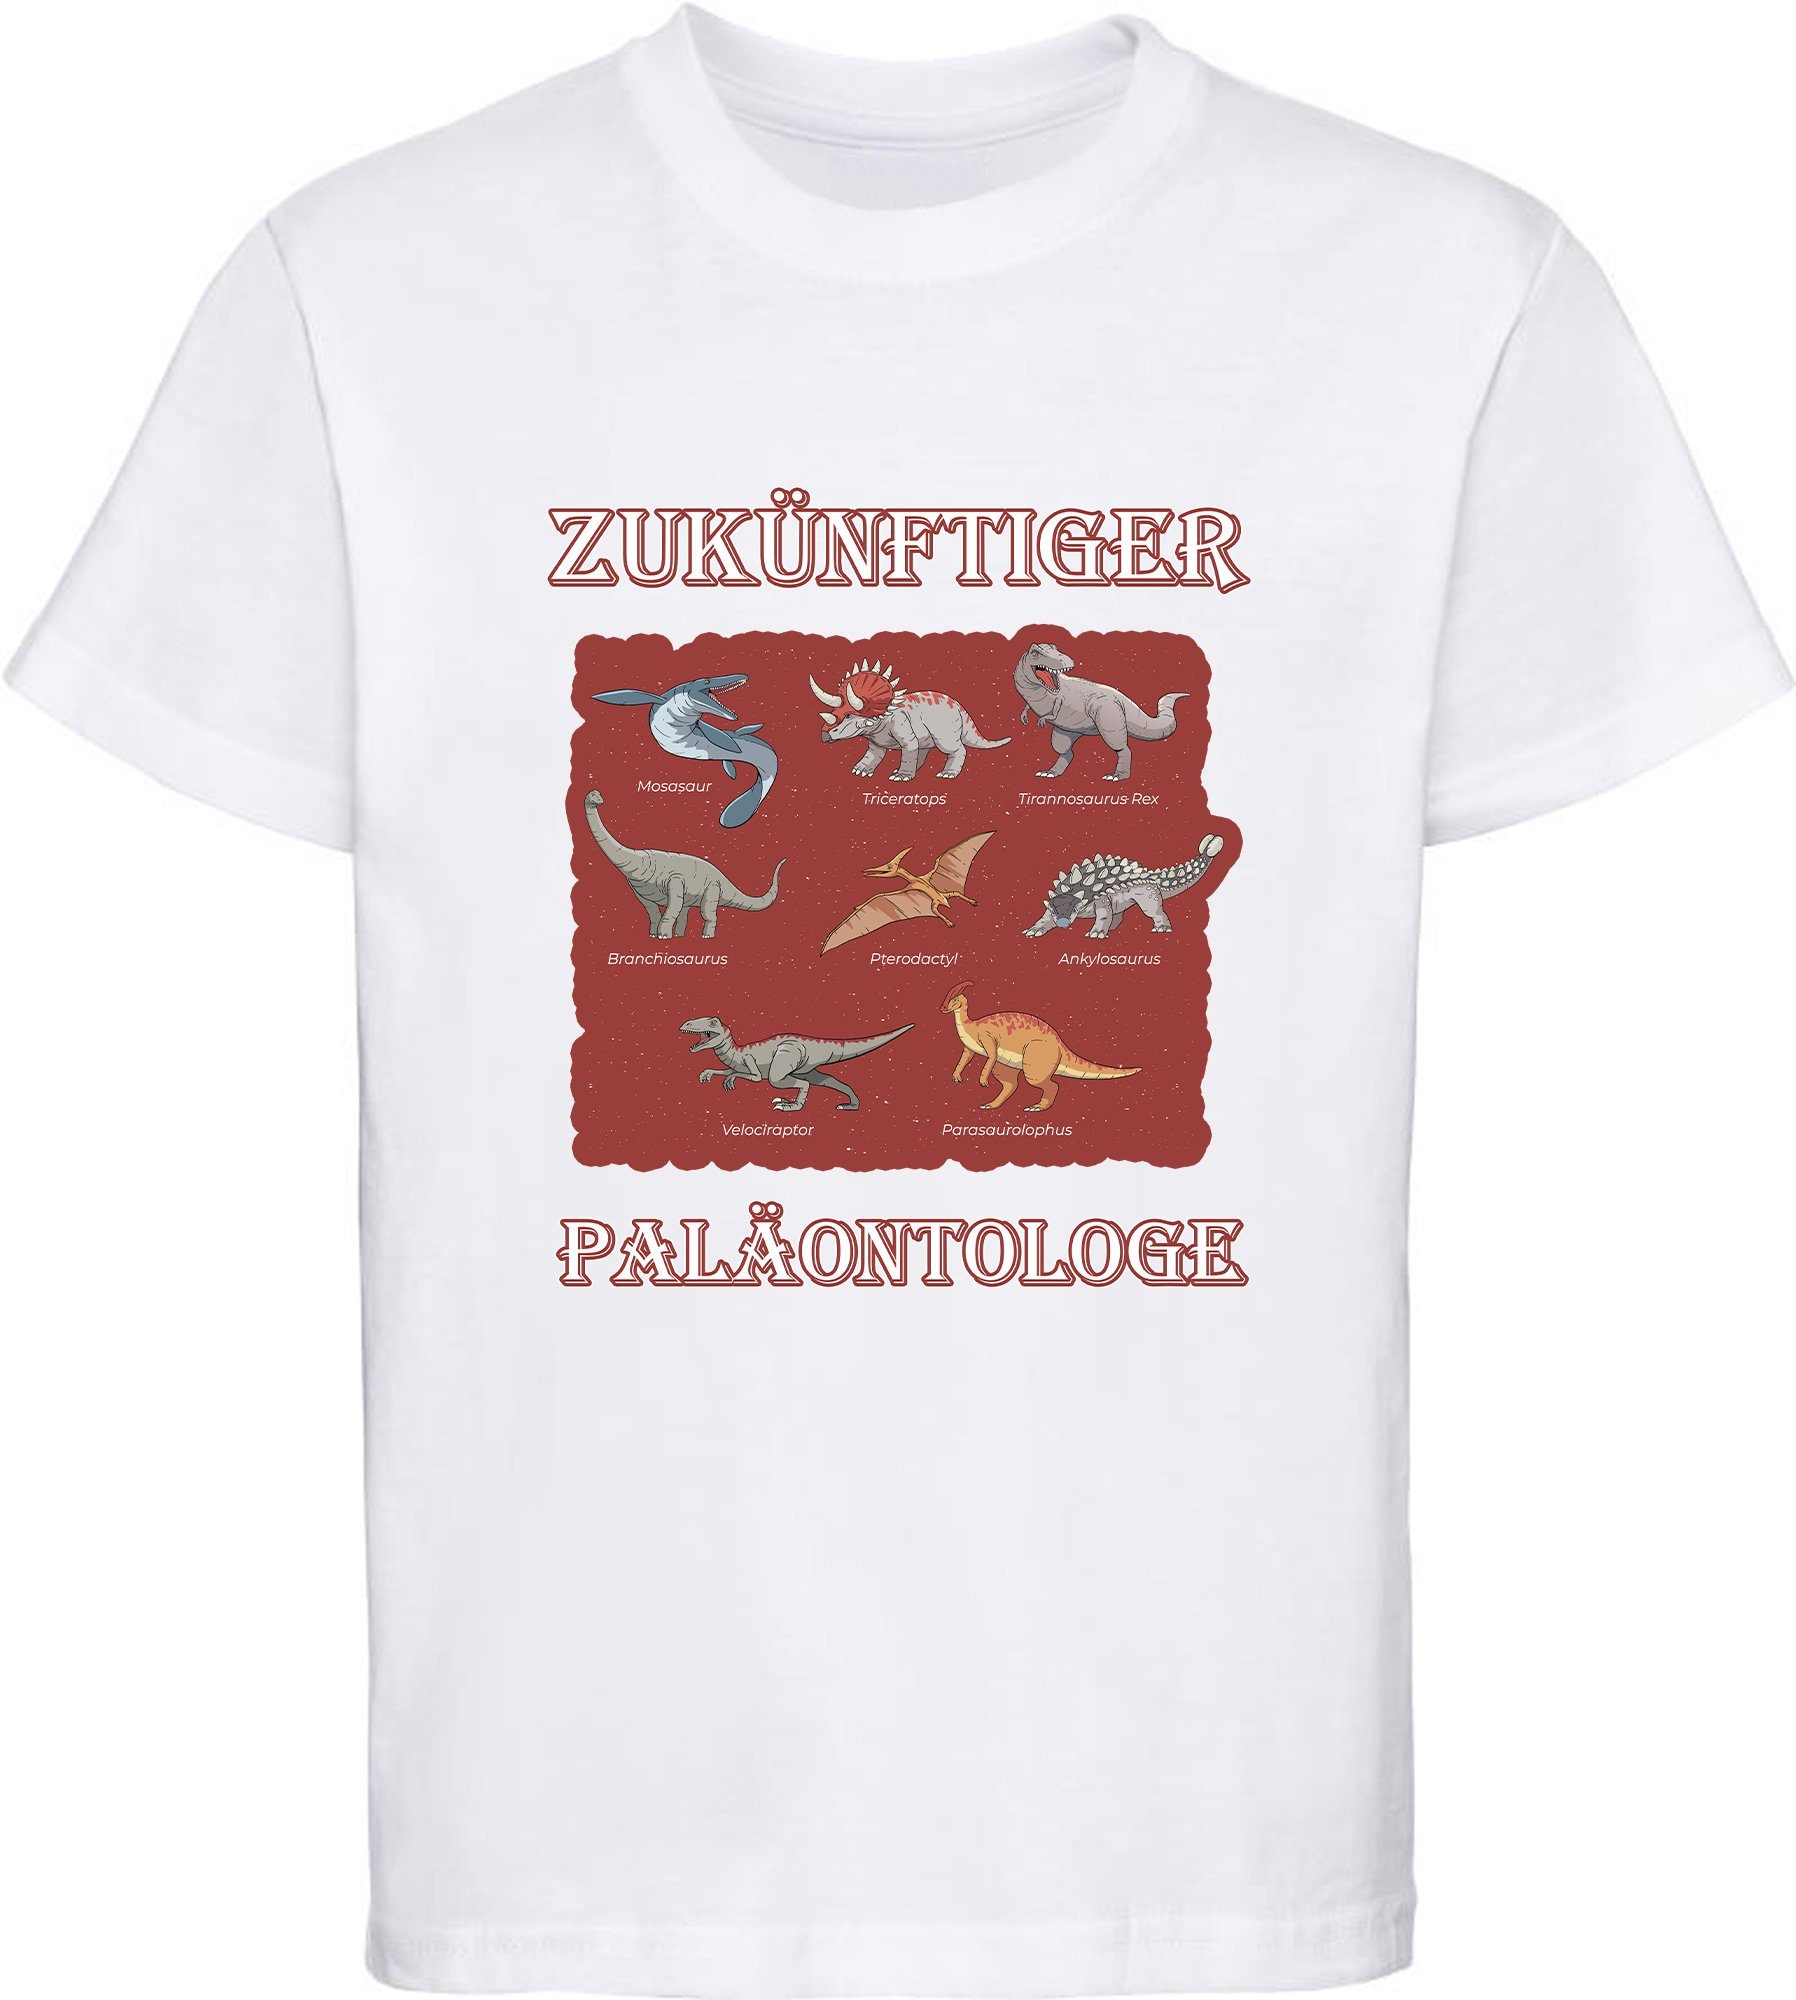 MyDesign24 T-Shirt bedrucktes Kinder T-Shirt Paläontologe mit vielen Dinosauriern 100% Baumwolle mit Dino Aufdruck, weiss i50